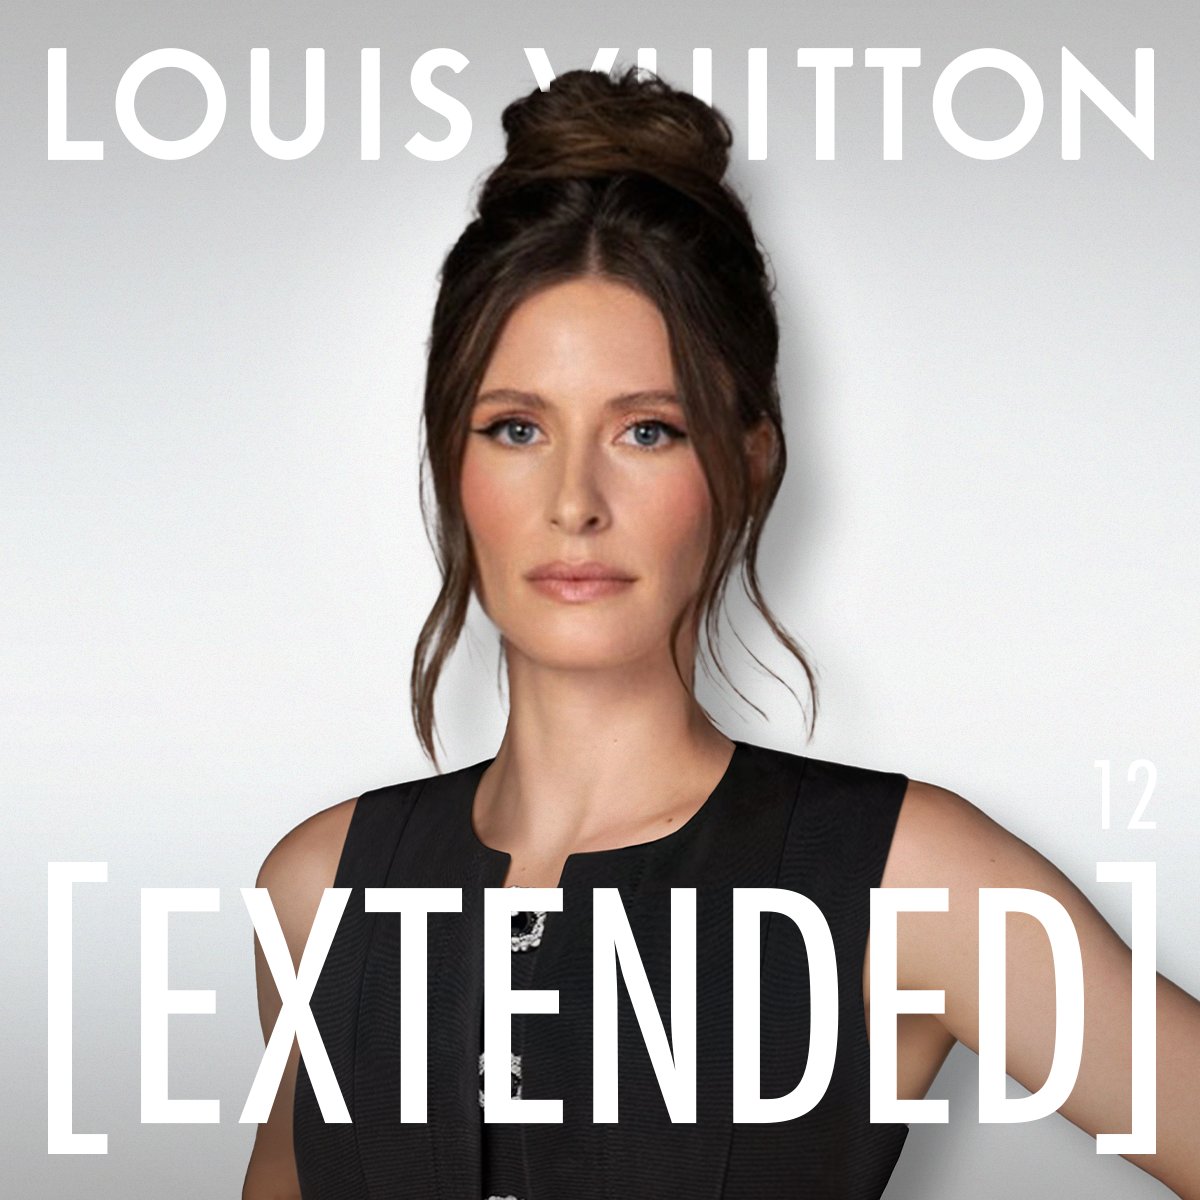 Louis Vuitton [Extended] — The Podcast:エピソード12
最先端技術に先駆的に投資をしている先見性のある起業家 #MeganKaspar が語るデジタルの世界を楽しんで。すべてのストリーミングプラットフォーム、または on.louisvuitton.com/6013j4VqW から(※英語のみ)。

#LVExtended #LoicPrigent #LouisVuitton